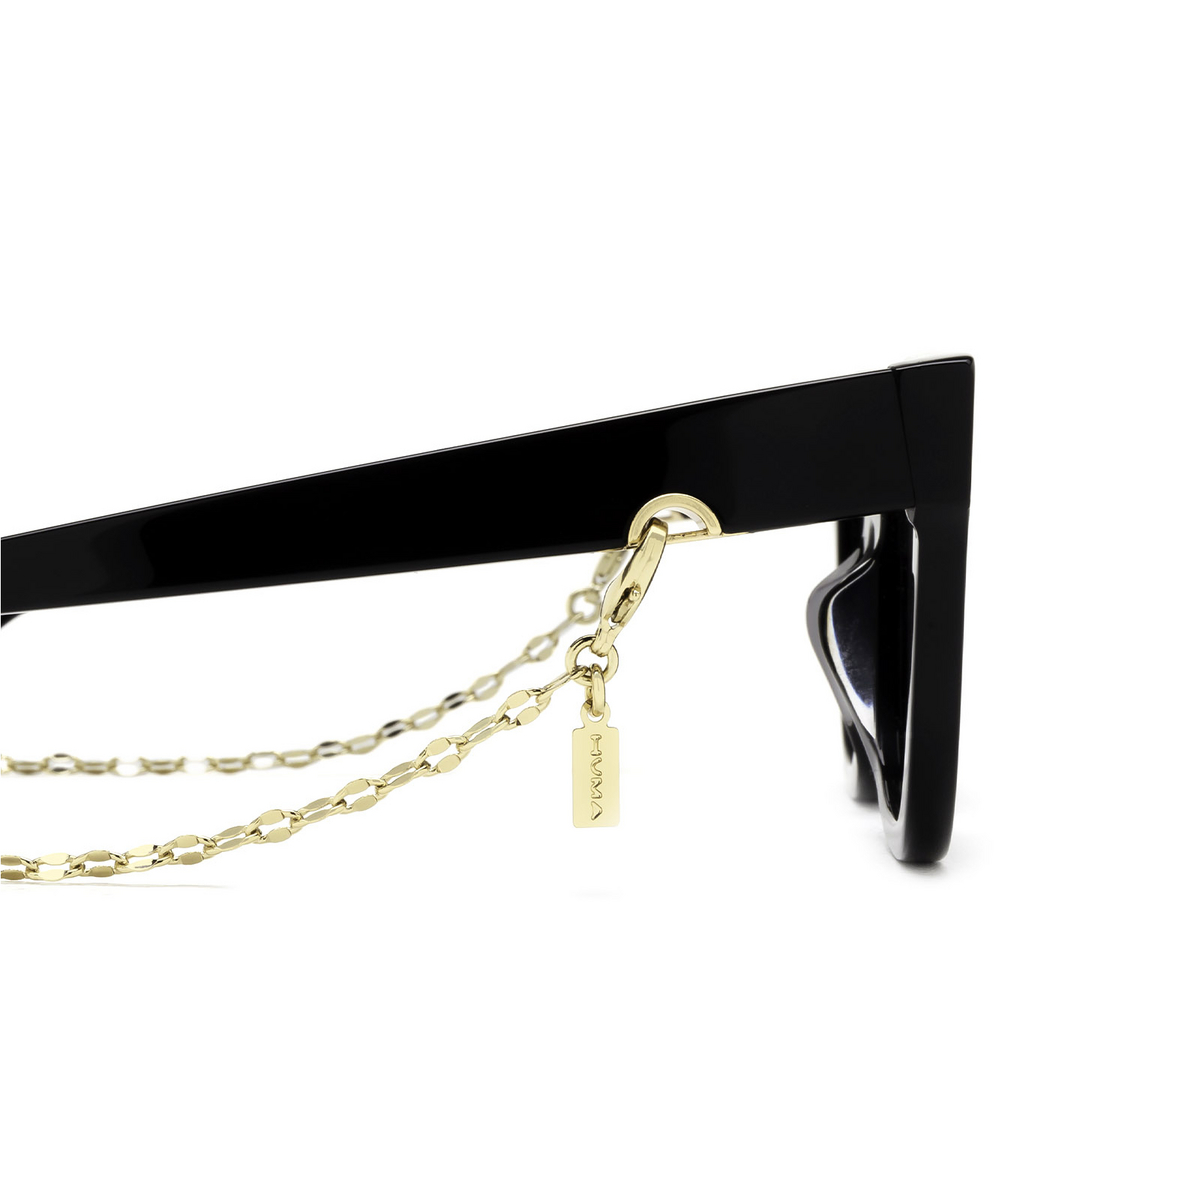 Huma® Accessories: Oval Marine Chain color Gold L06 - 2/3.